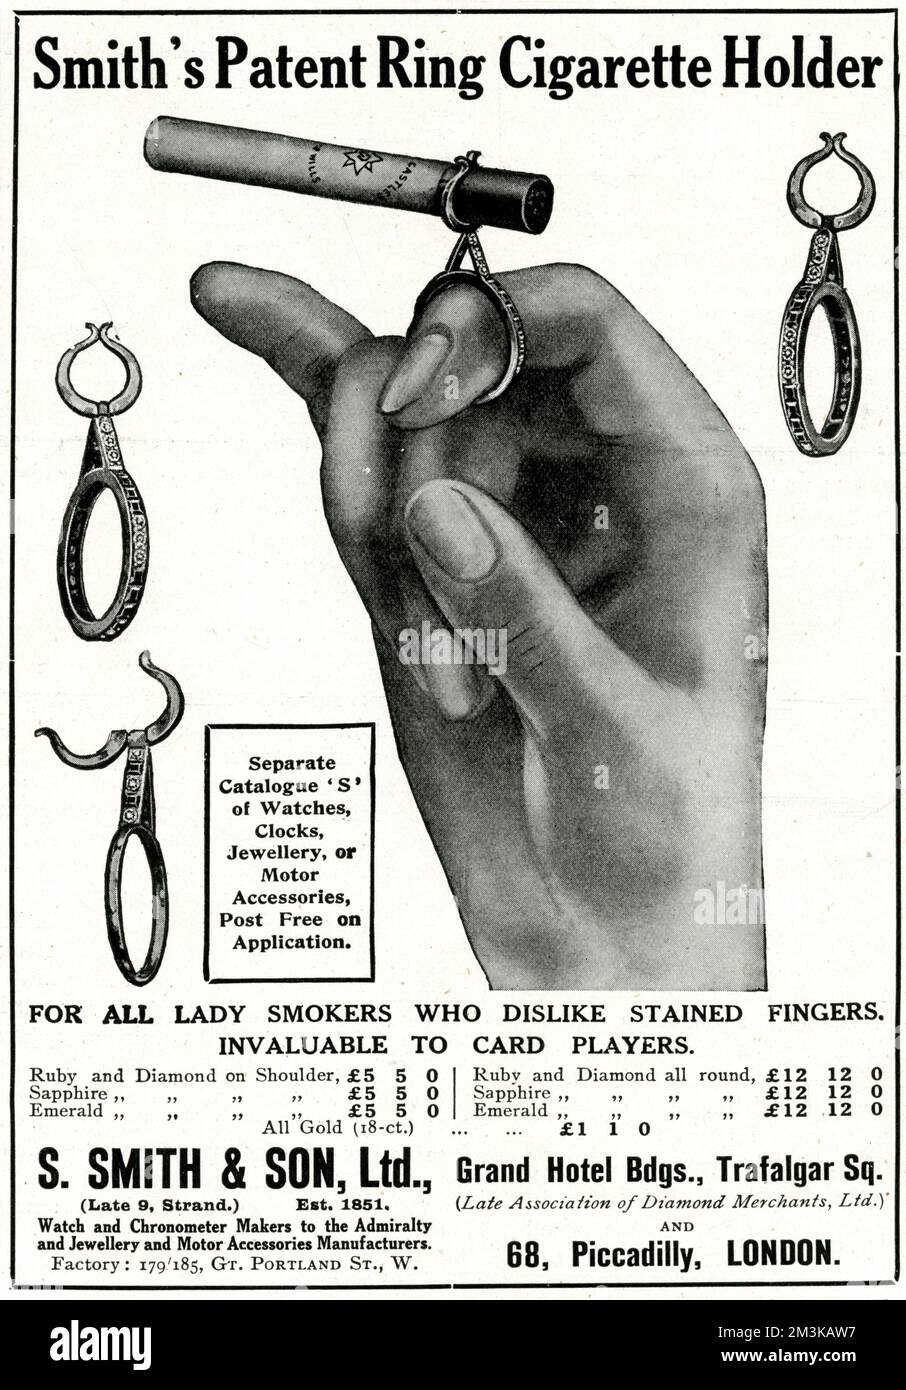 Porte-cigarette à bague vernie pour les dames, ceux qui n'aiment pas les doigts tachés. 1914 Banque D'Images